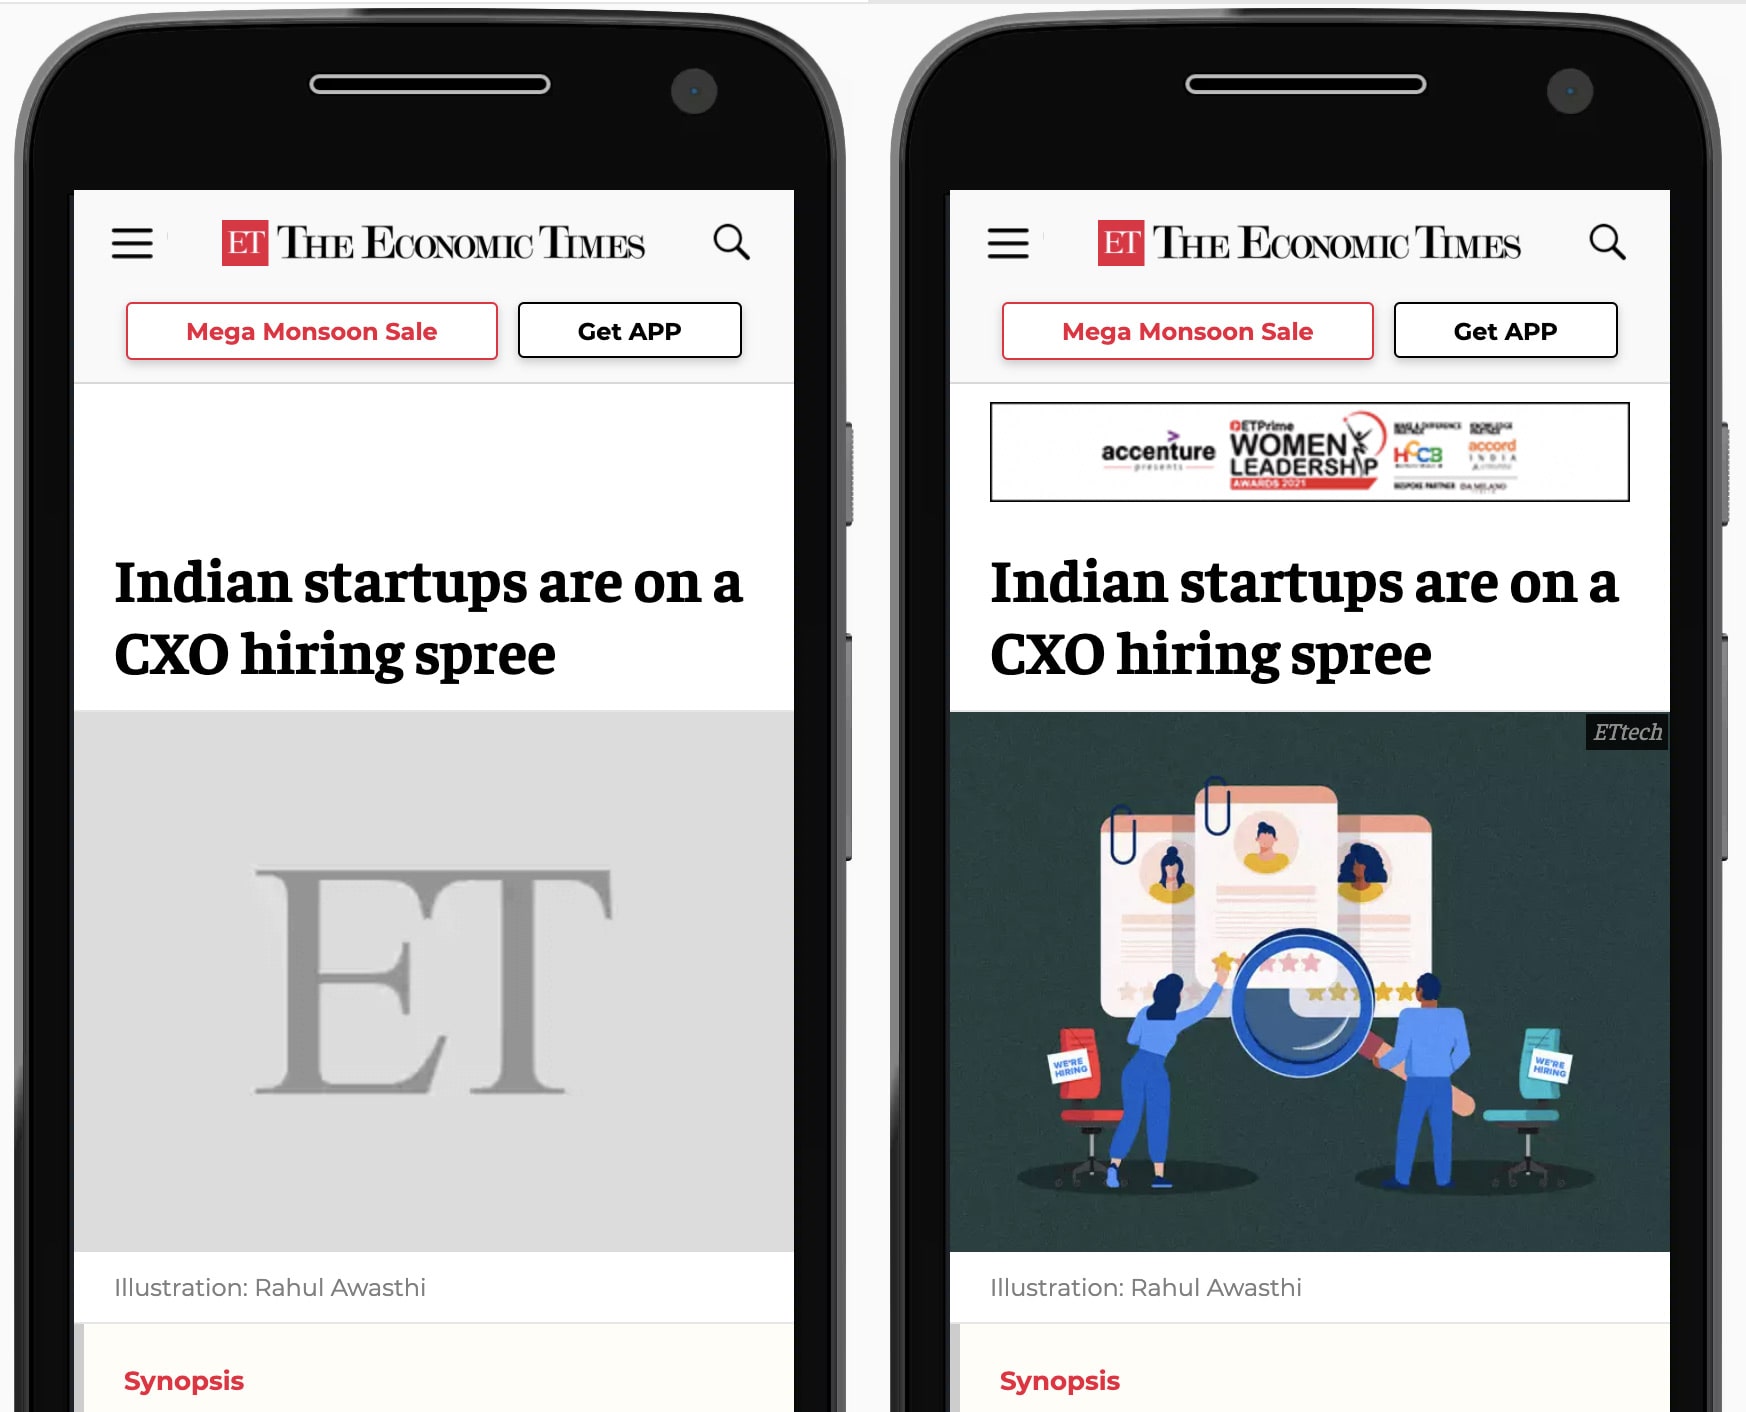 The Economic Times की वेबसाइट की अगल-बगल में तुलना, जैसा कि मोबाइल फ़ोन पर दिखाया गया है. बाईं ओर, ग्रे प्लेसहोल्डर को लेख की हीरो इमेज के लिए रिज़र्व रखा गया है. दाईं ओर, प्लेसहोल्डर को लोड की गई इमेज से बदल दिया जाता है.